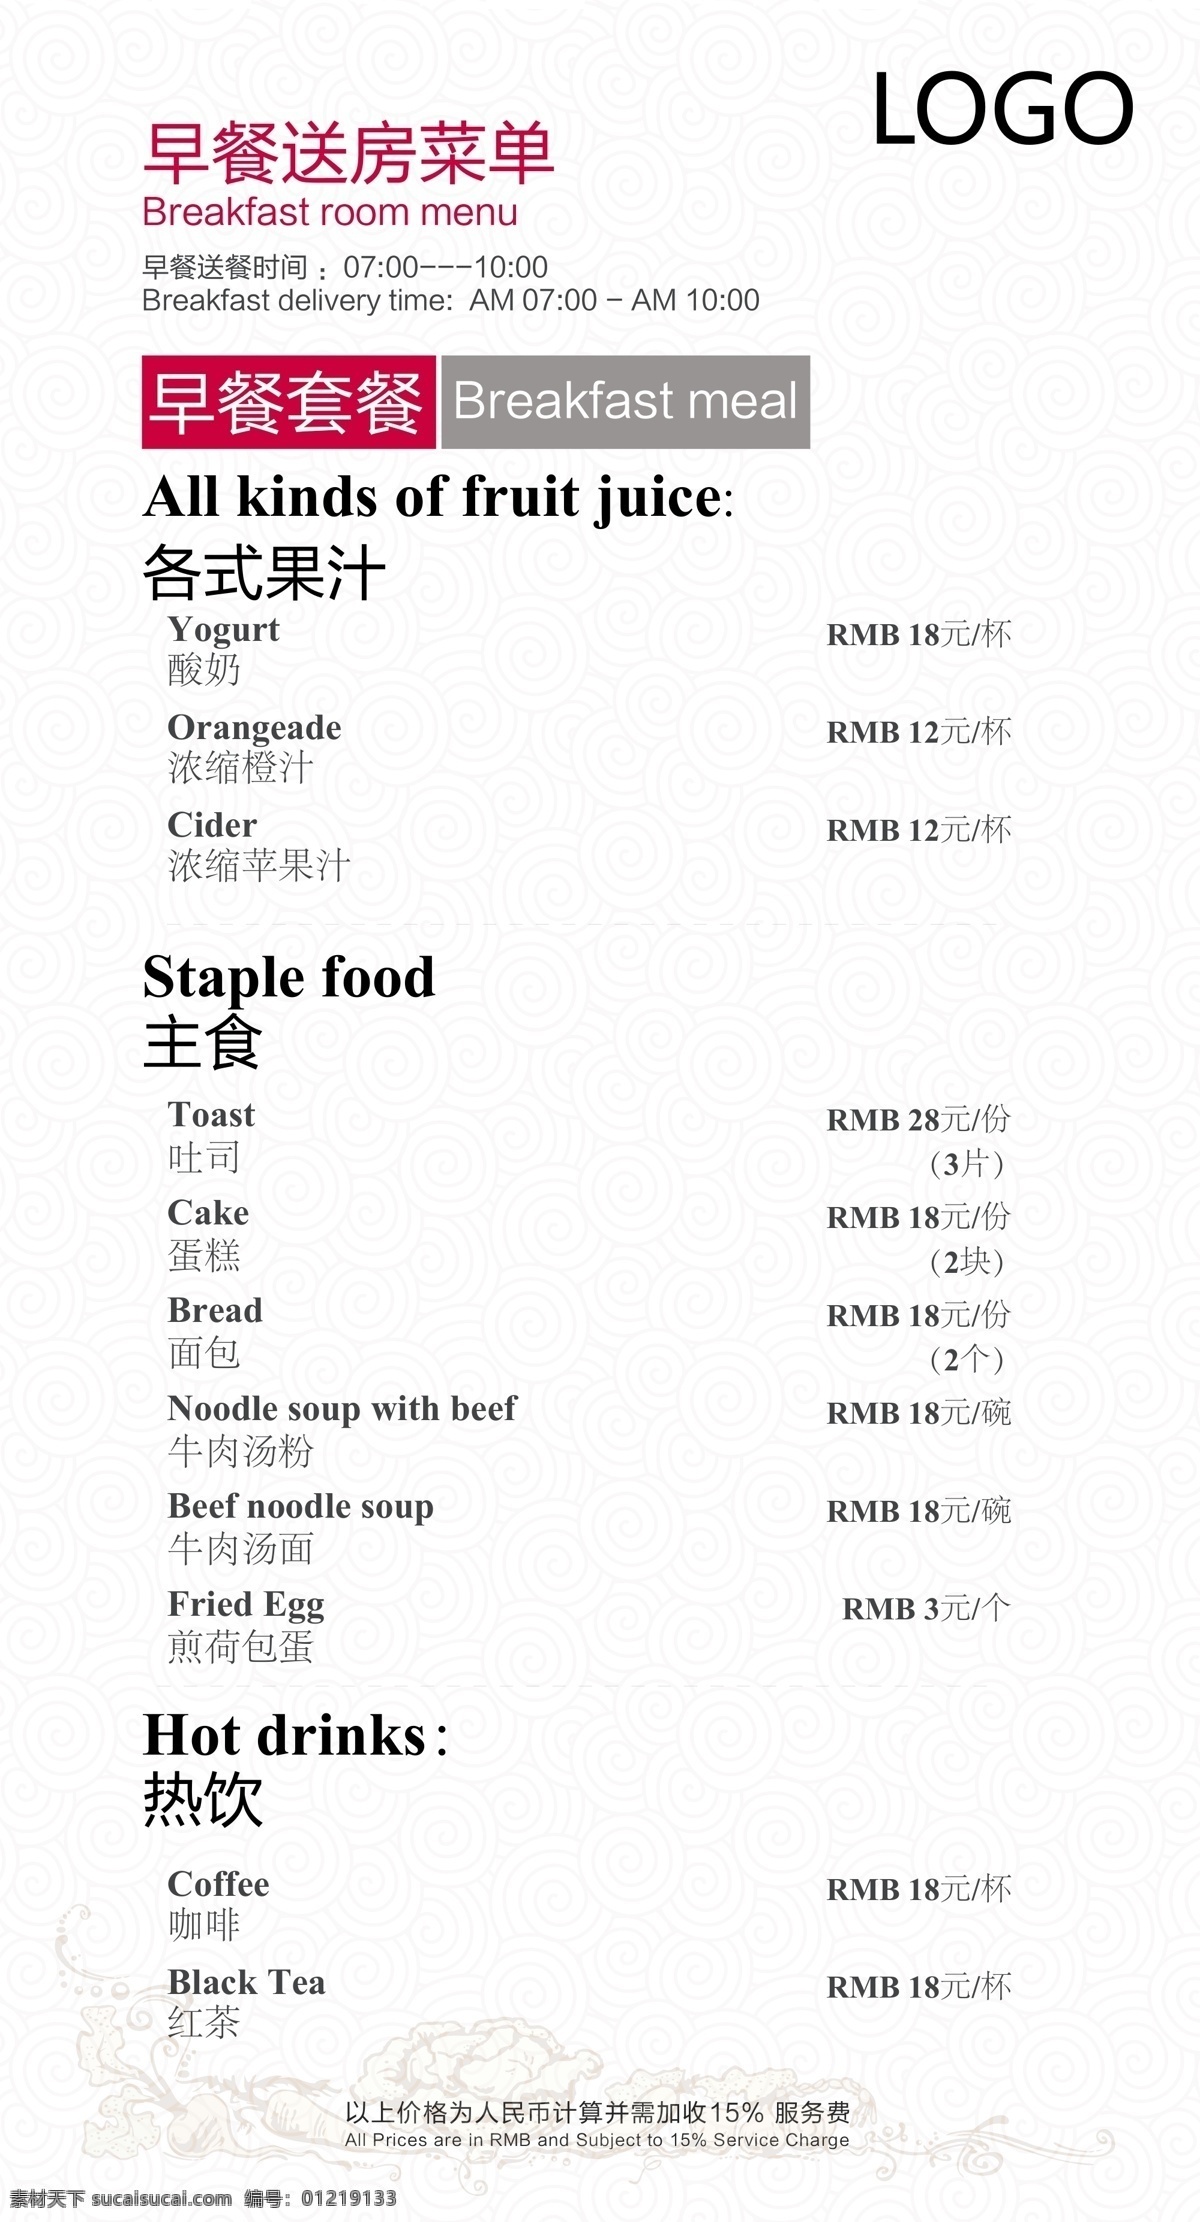 客房点菜单 点菜单 菜单 中英文菜单 西式 精品菜单 画册设计